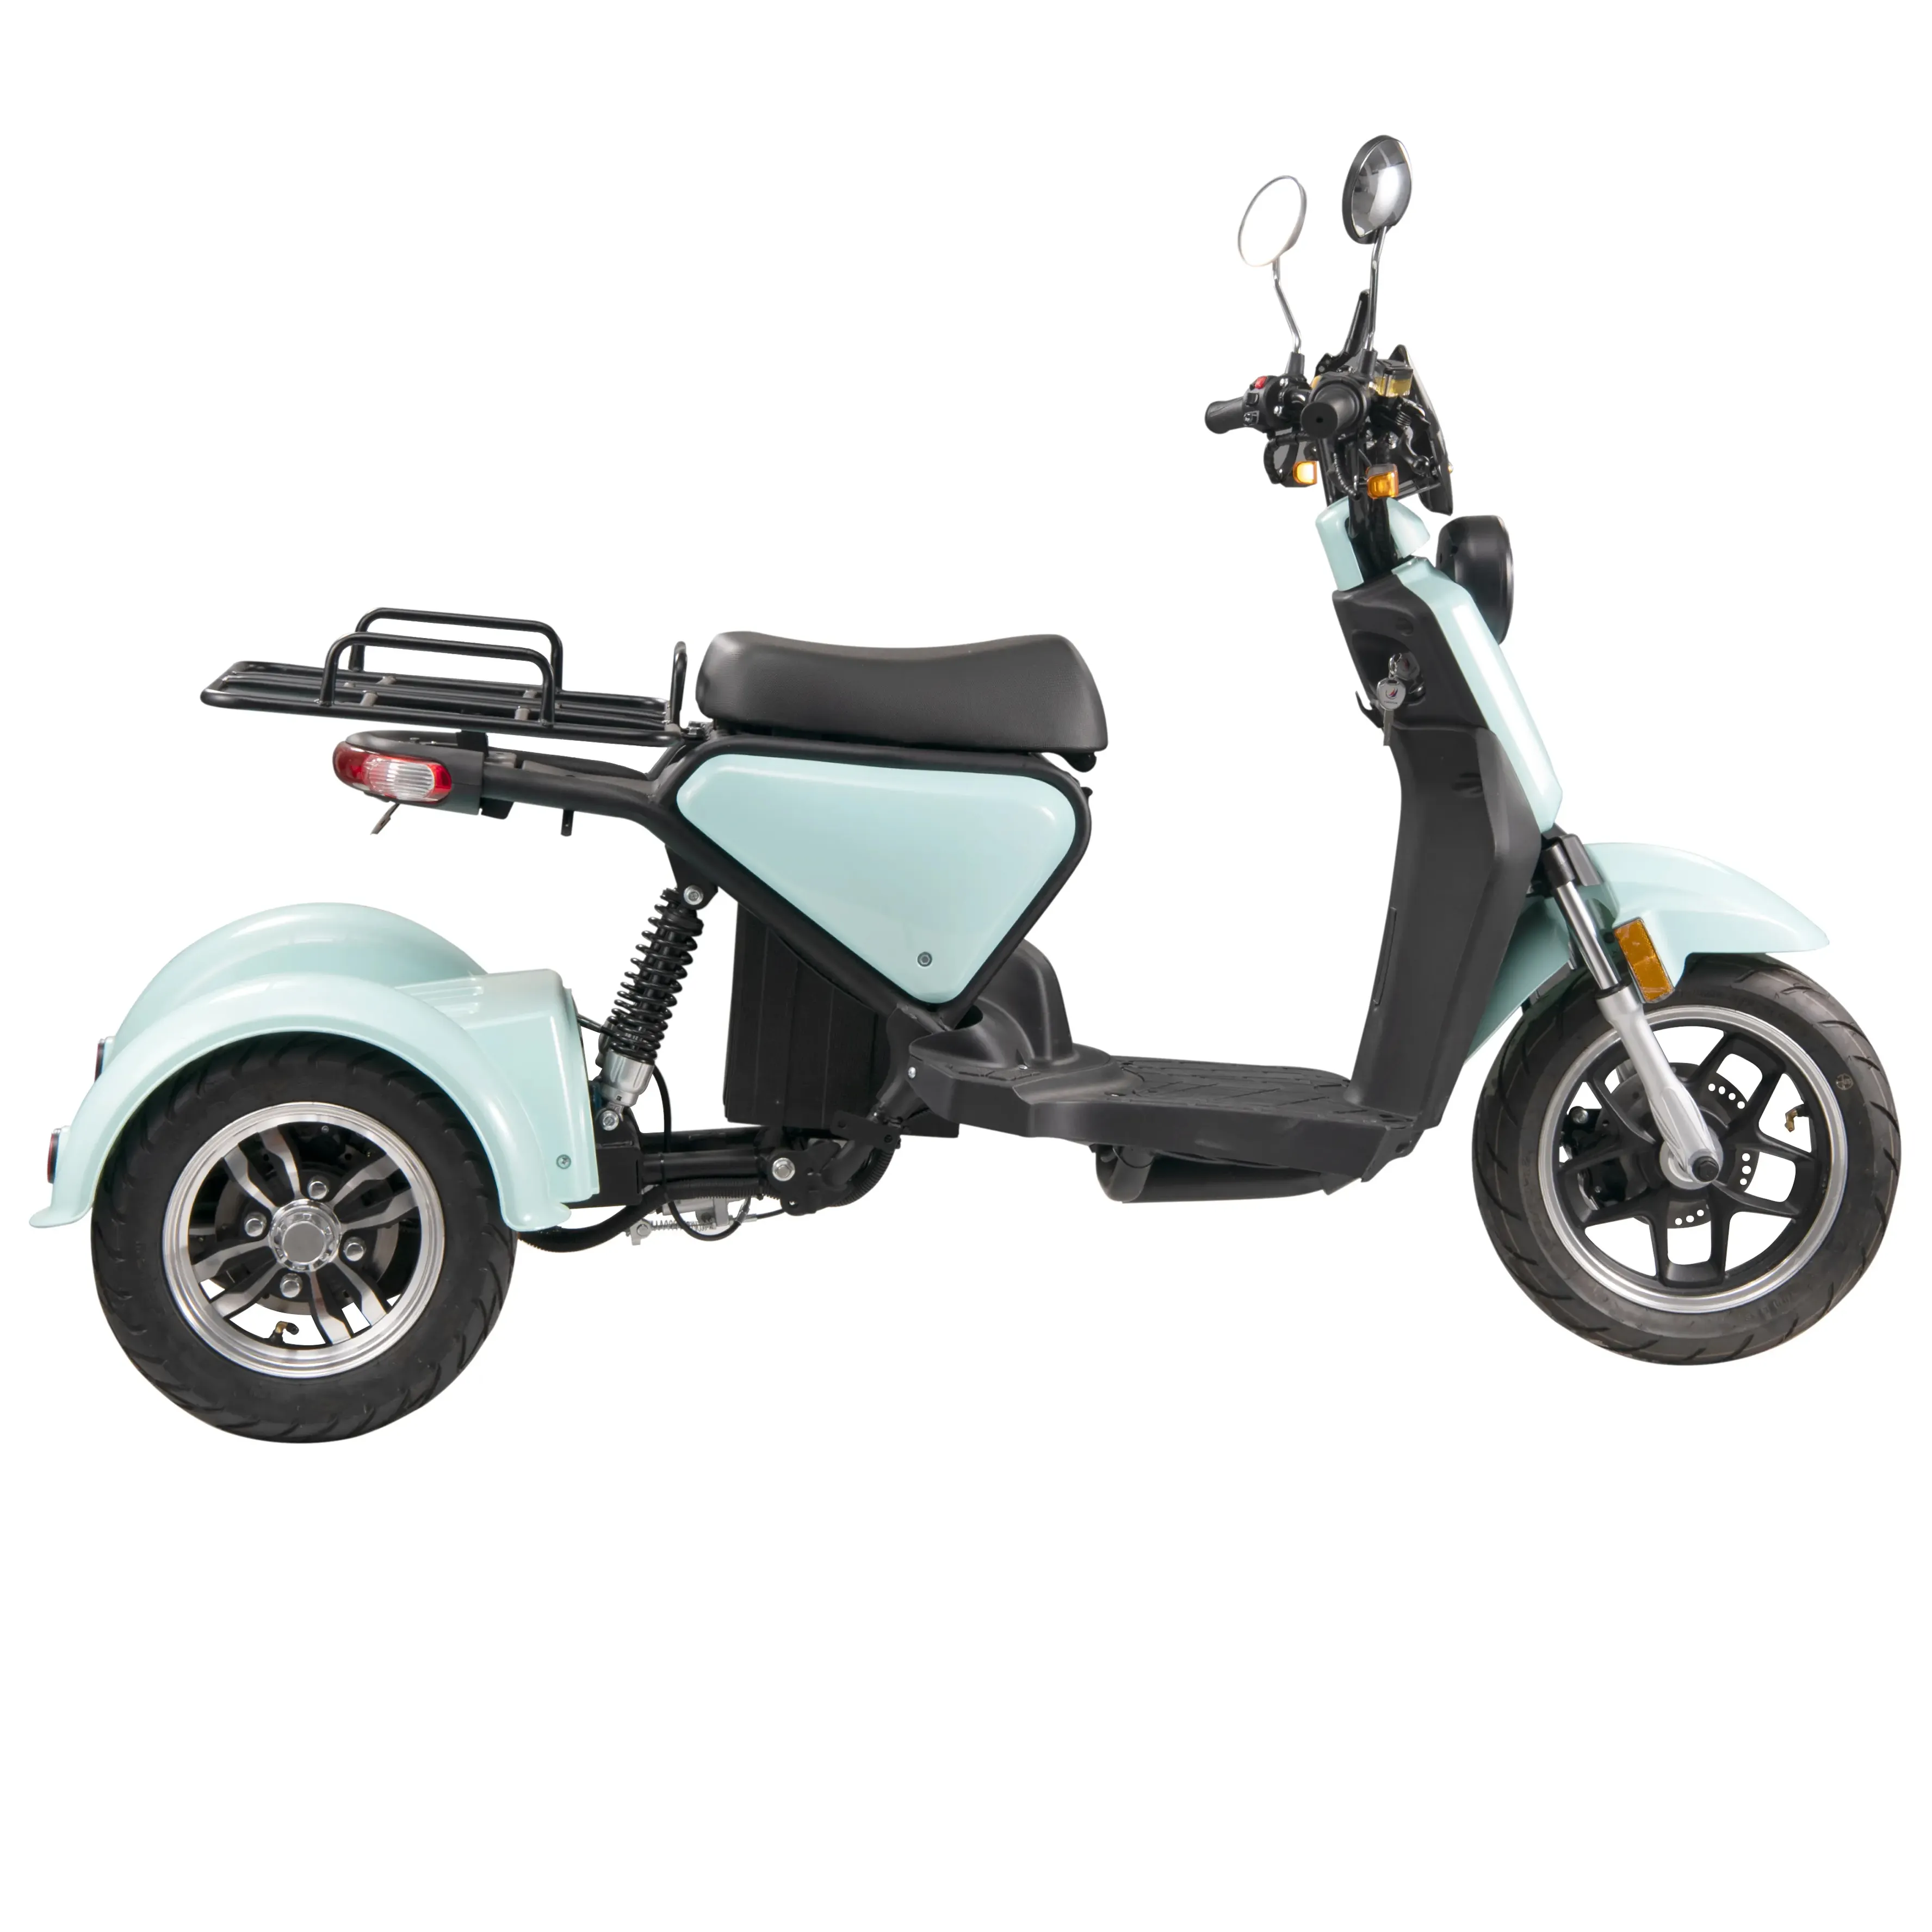 Oem/Odm Elektrische Trike Drie Wielen Volwassen Lading Slimme Elektrische Motorfiets Trike Super Lang Uithoudingsvermogen Veilig En Betrouwbaar